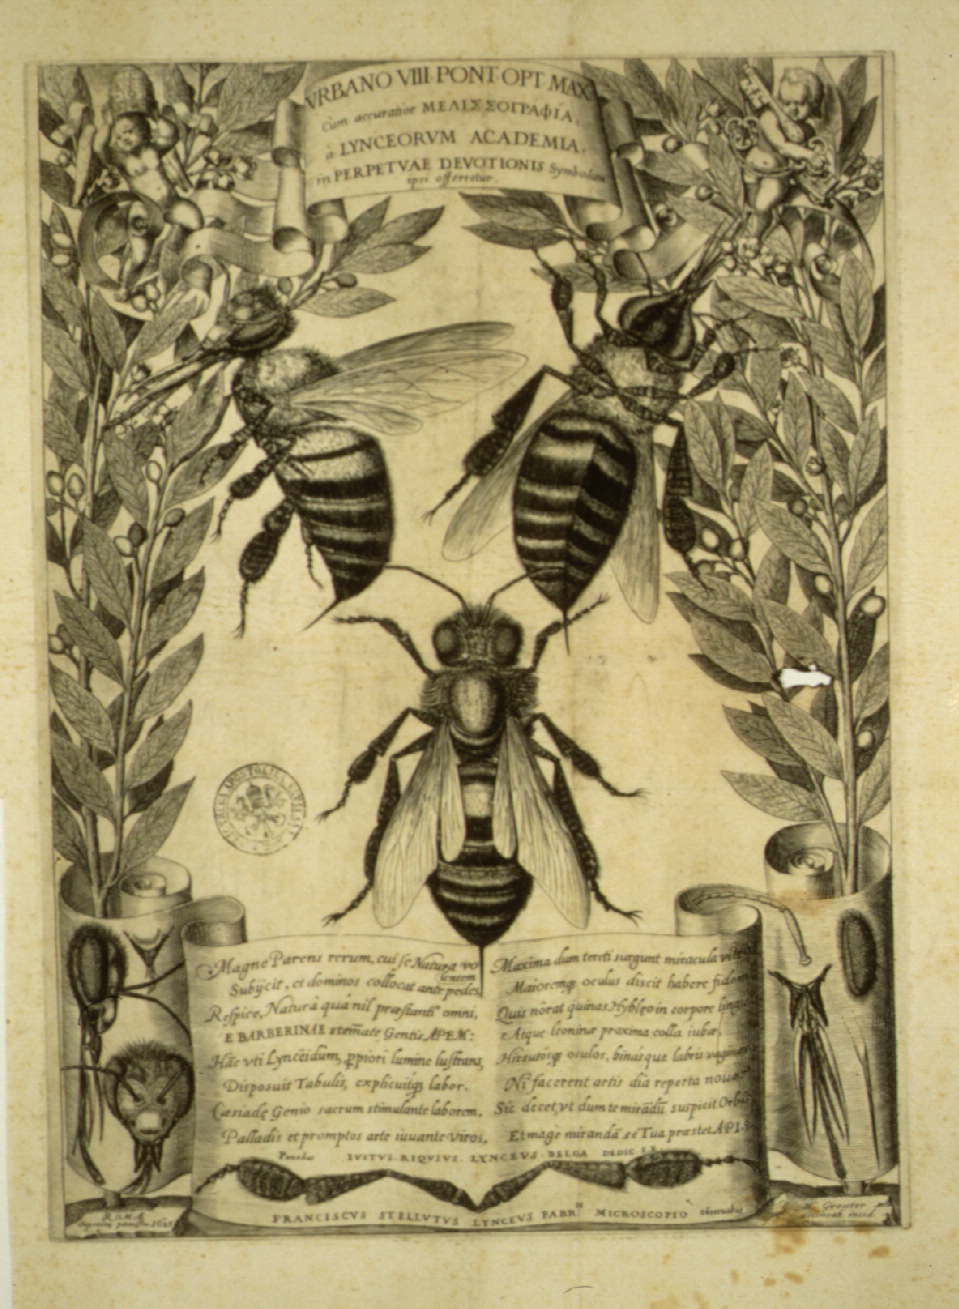 Melissographia, Francesco Stelluti, 1625 - Vatican Museum